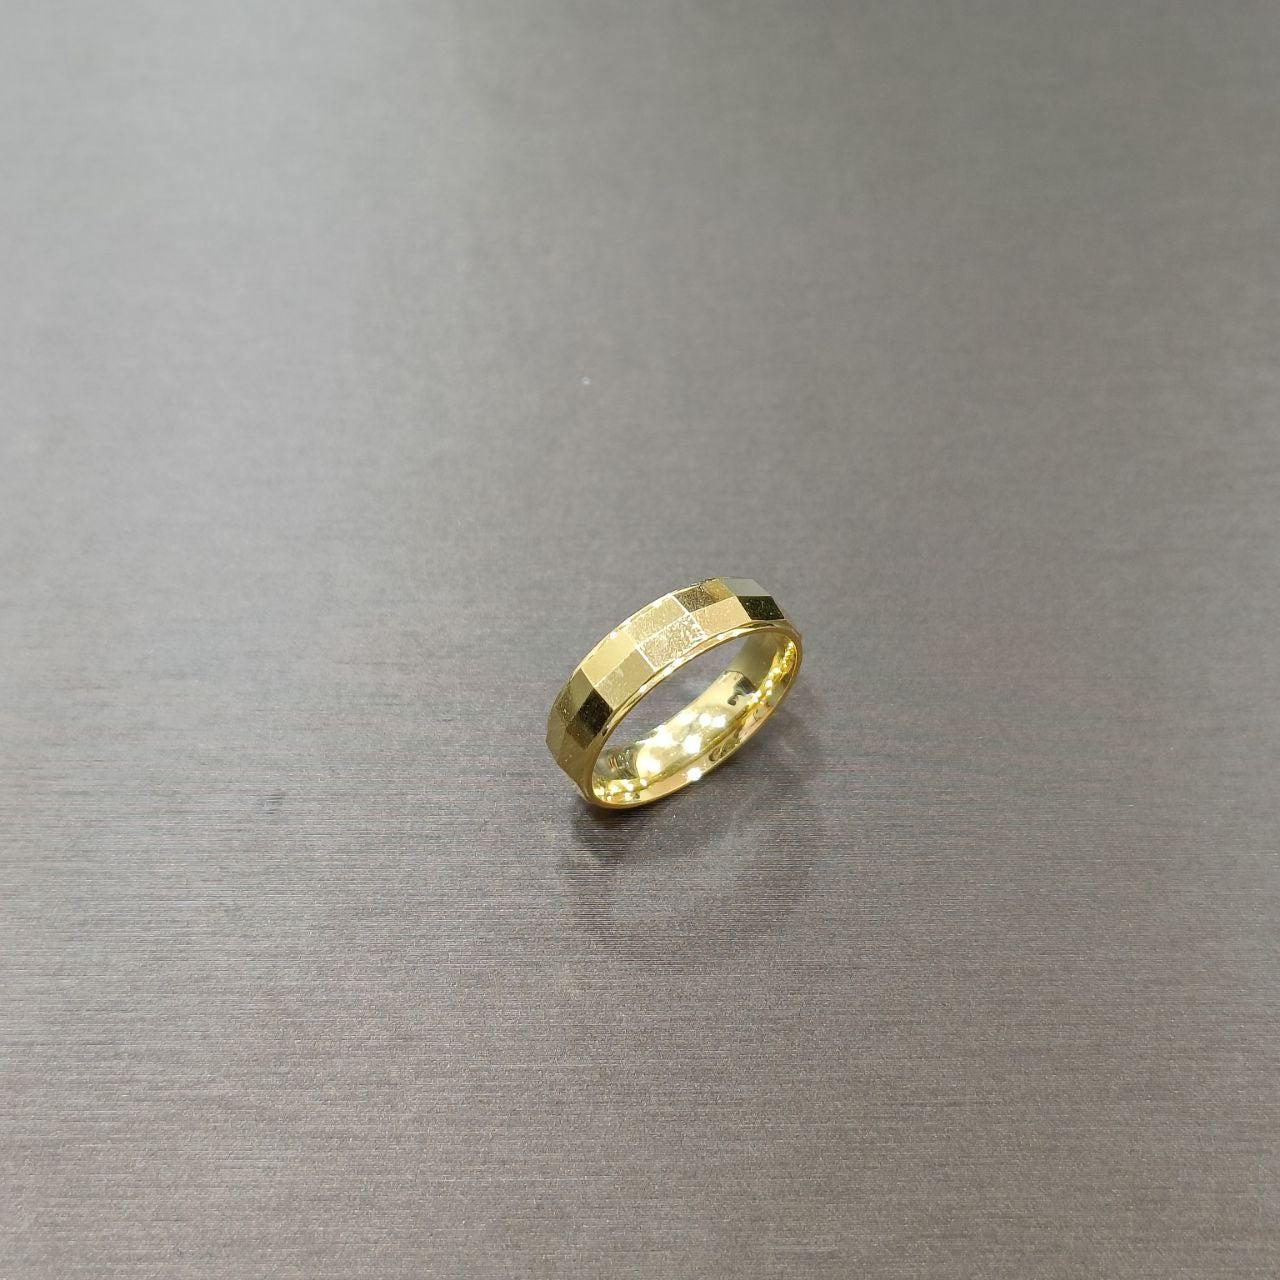 22k / 916 Gold Wedding Band Ring V1-916 gold-Best Gold Shop